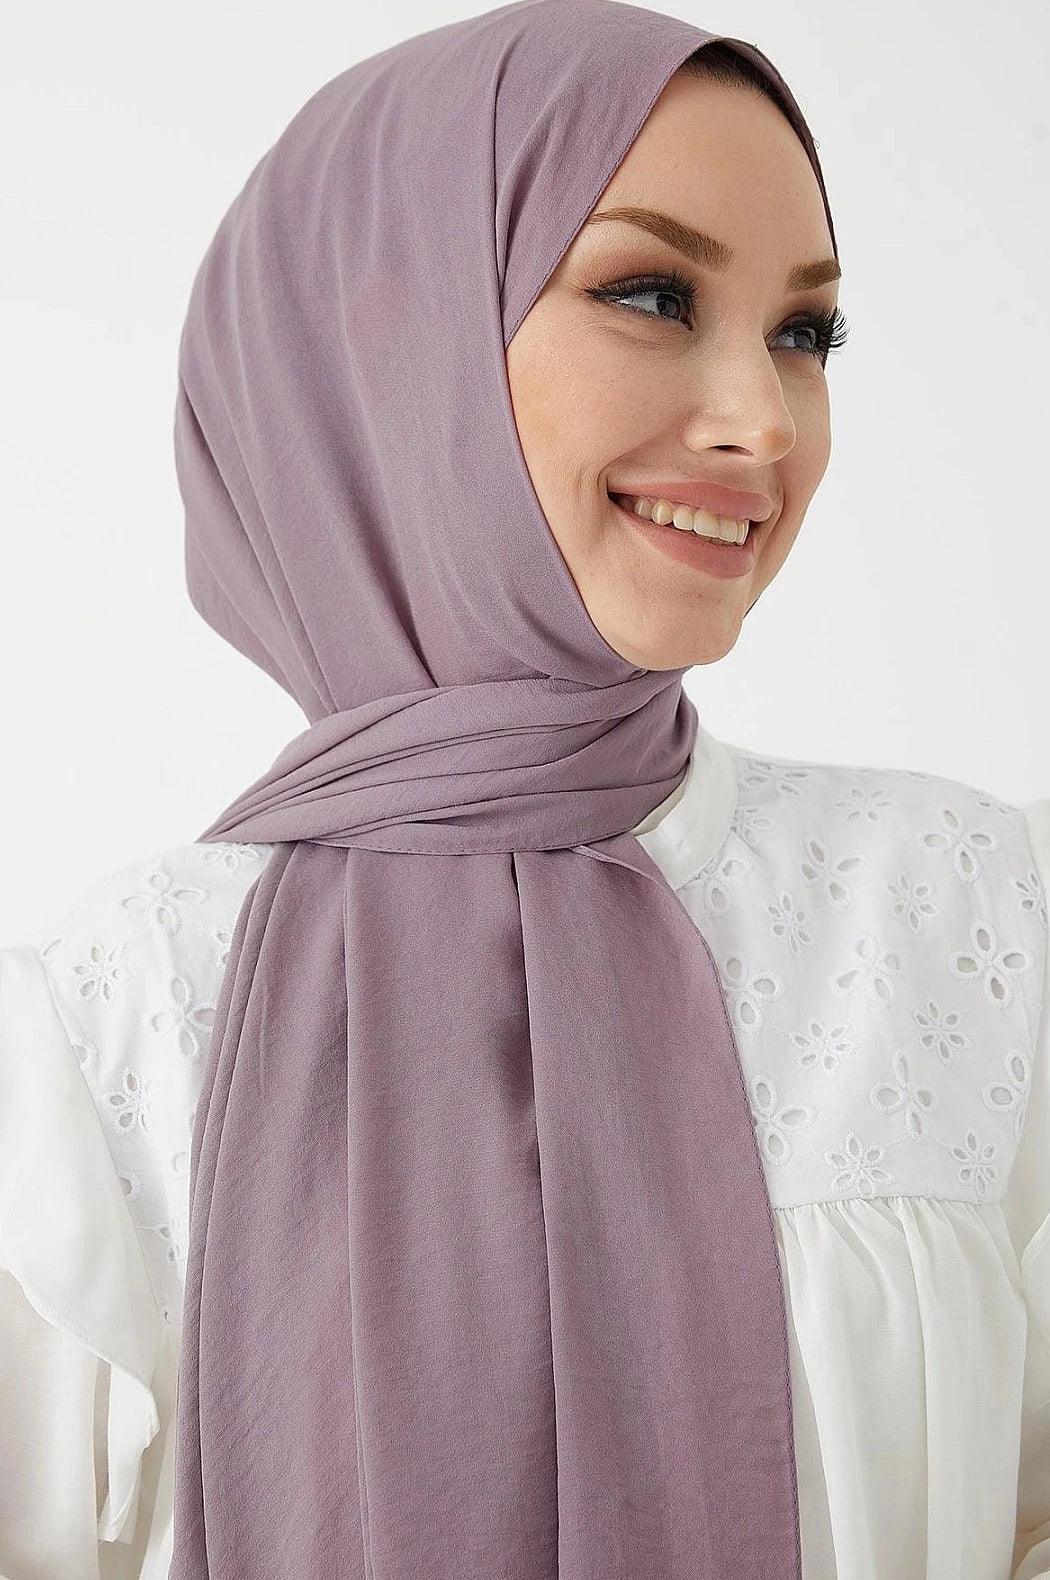 Jazz Modest Hijab Scarf for Women - Lilac Purple